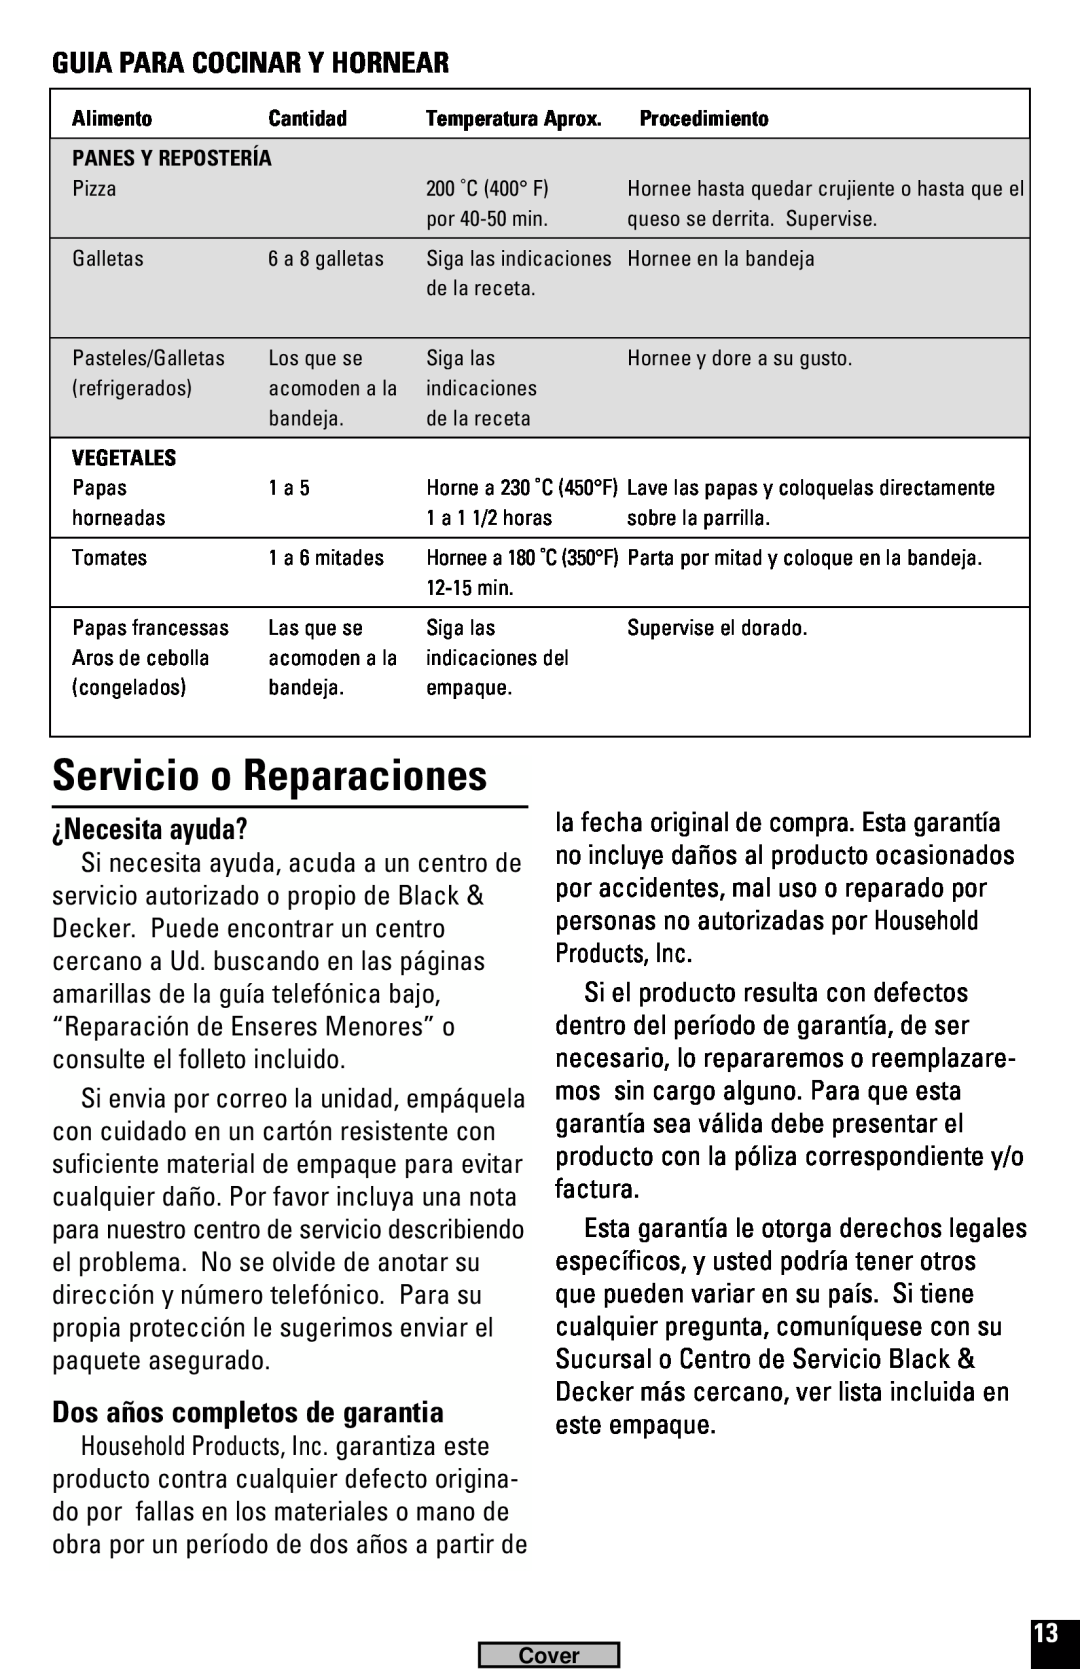 Black & Decker TRO520, TRO220 manual Servicio o Reparaciones, ¿Necesita ayuda?, Dos años completos de garantia 